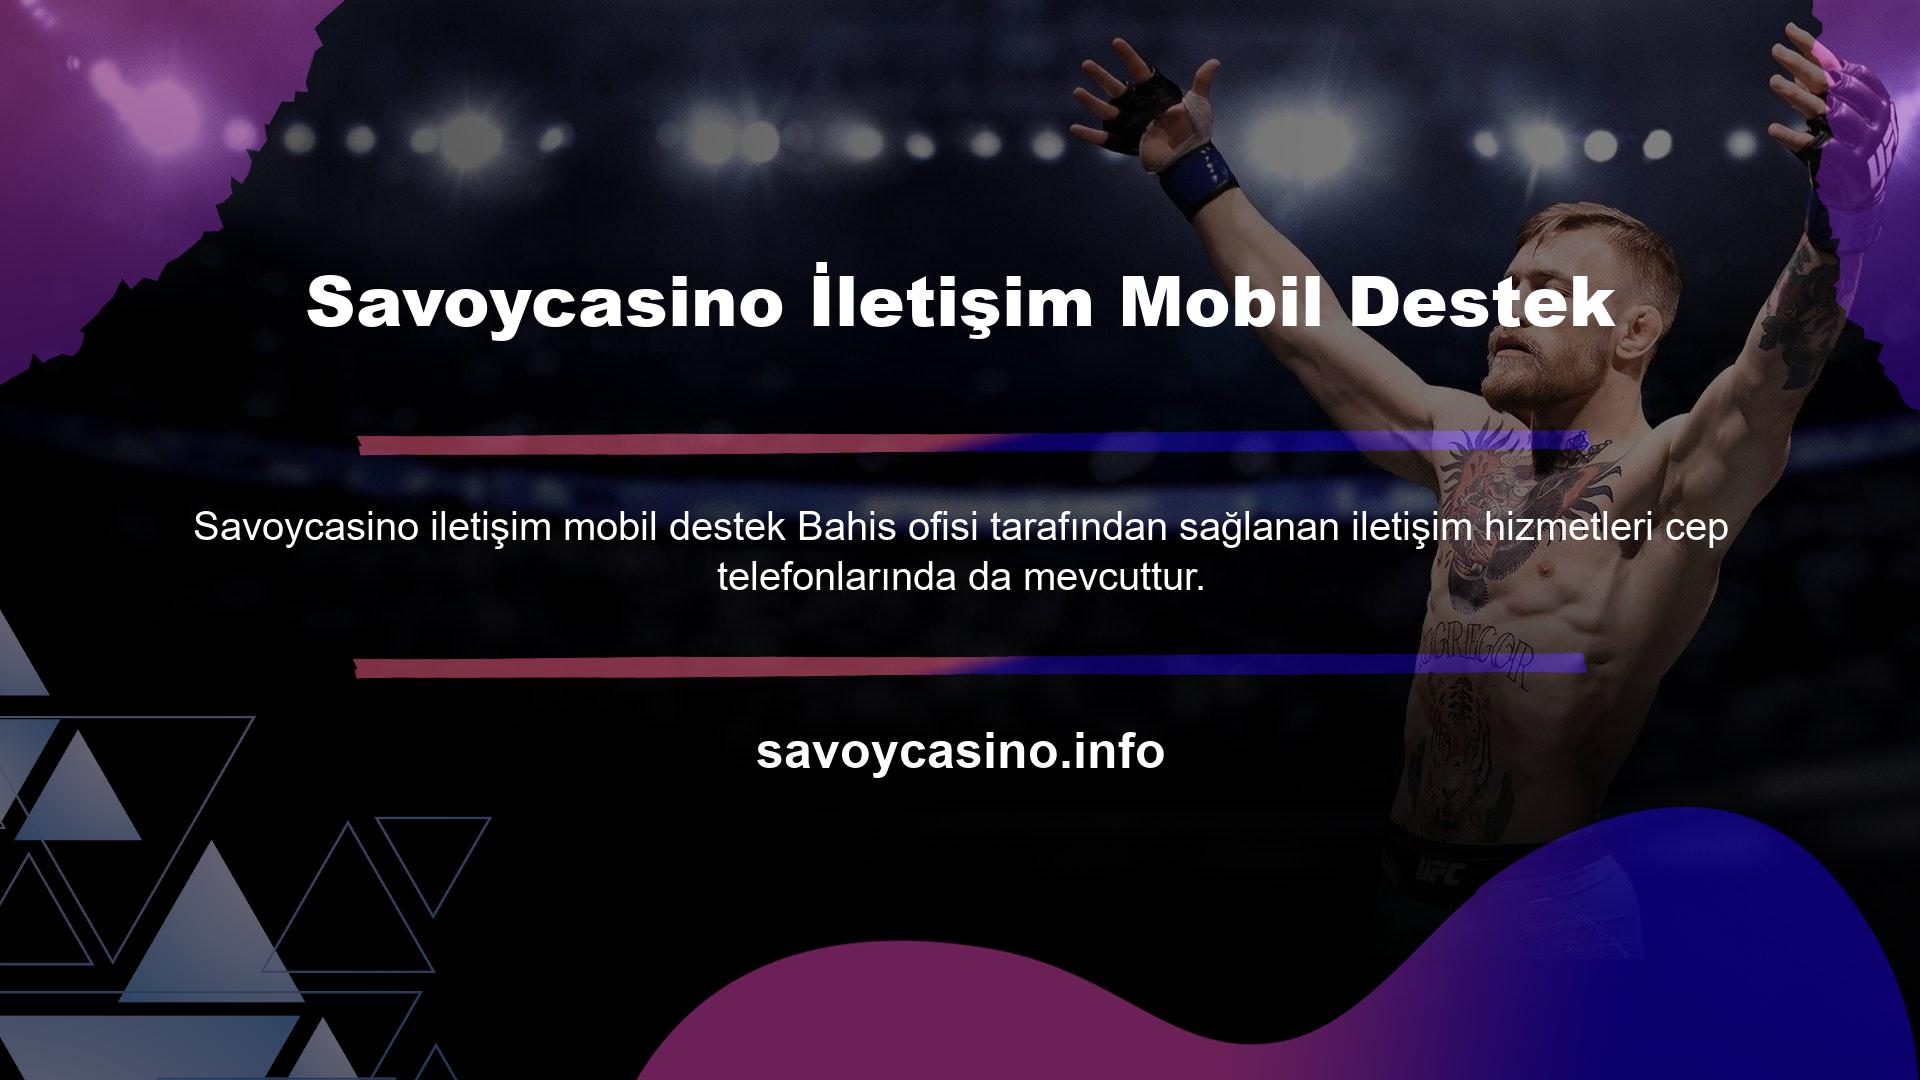 Mobil Uyumlu Savoycasino iletişim destek yöntemleri, sorularınızı farklı şekillerde yanıtlıyor